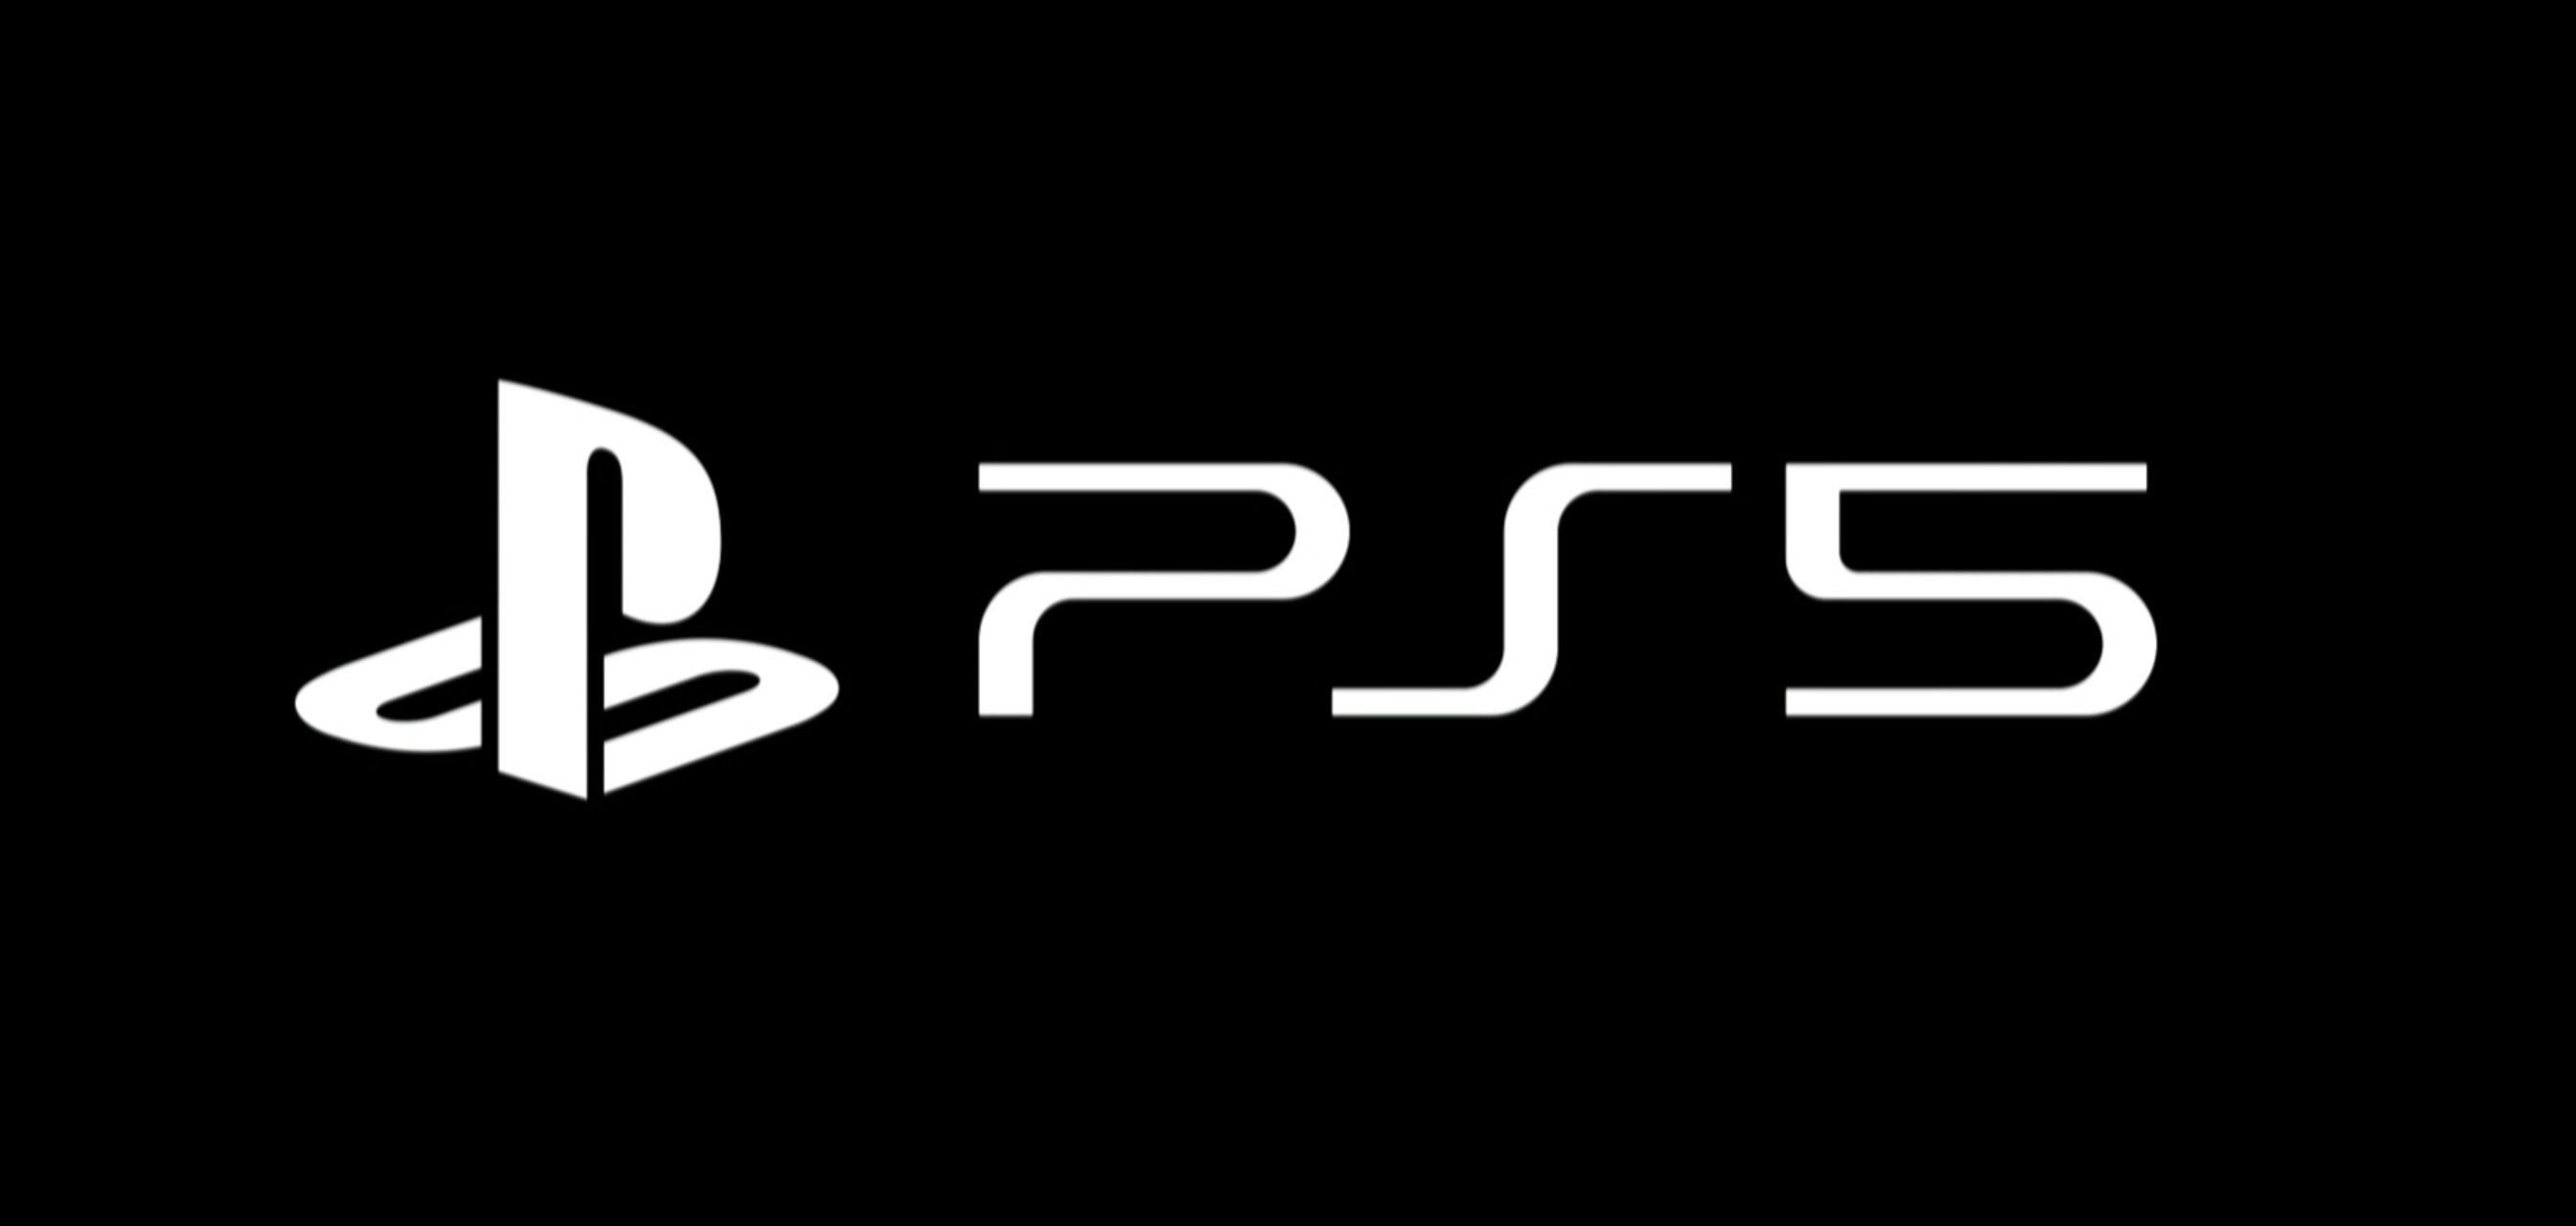 La presentación del logo de PS5 en la última CES 2020, generó expectativas en toda la comunidad gamer.